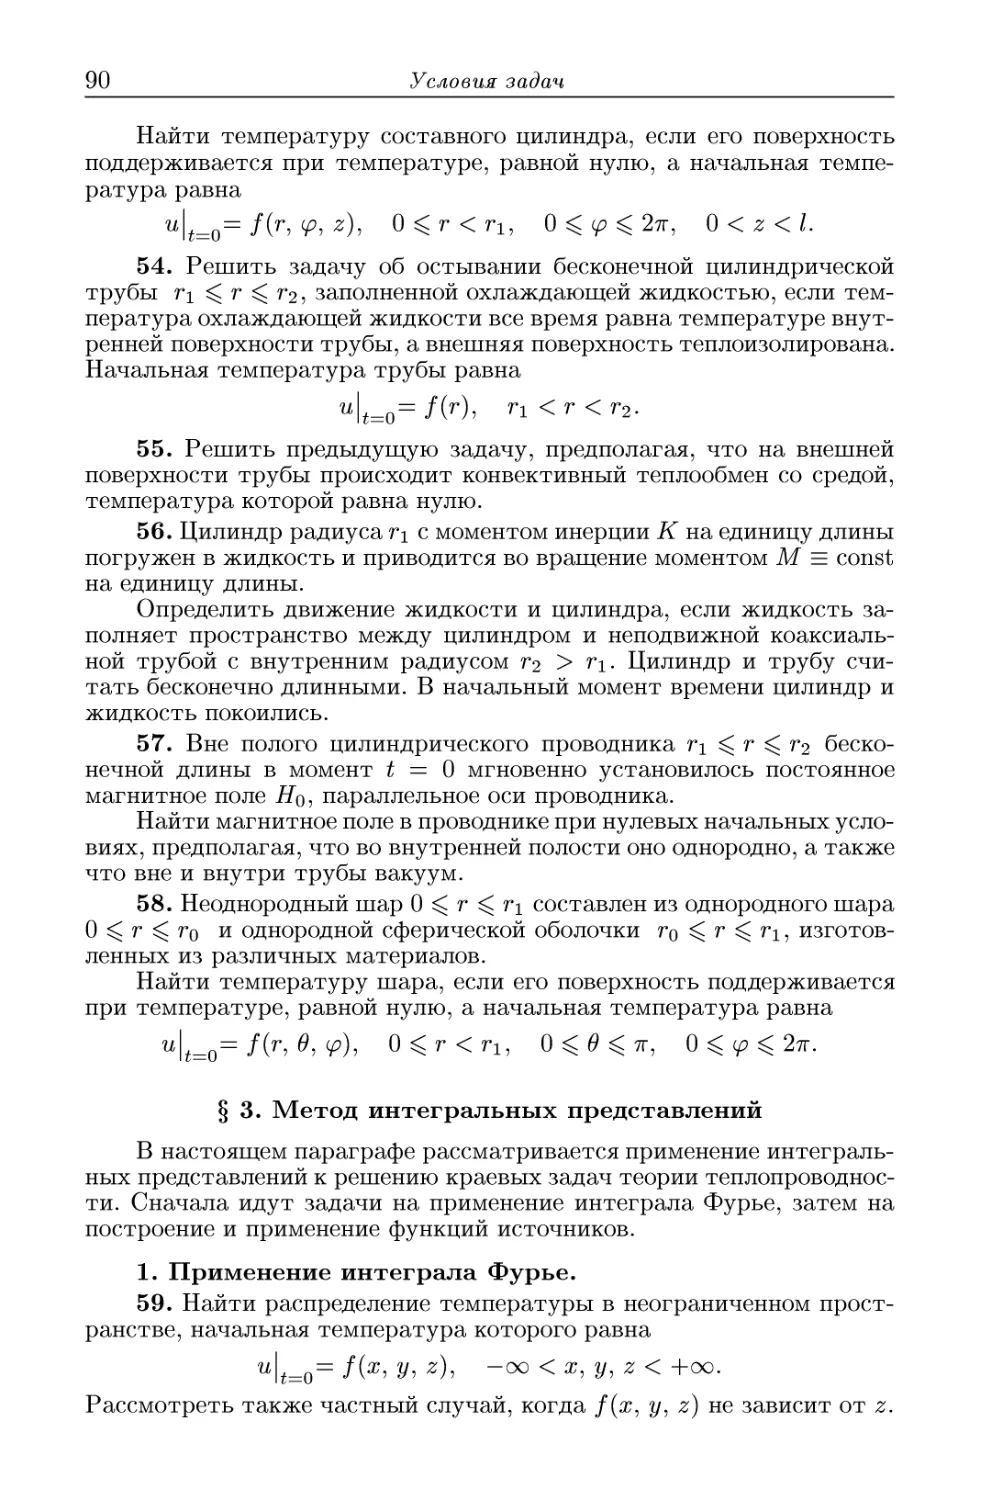 § 3. Метод интегральных представлений
1. Применение интеграла Фурье